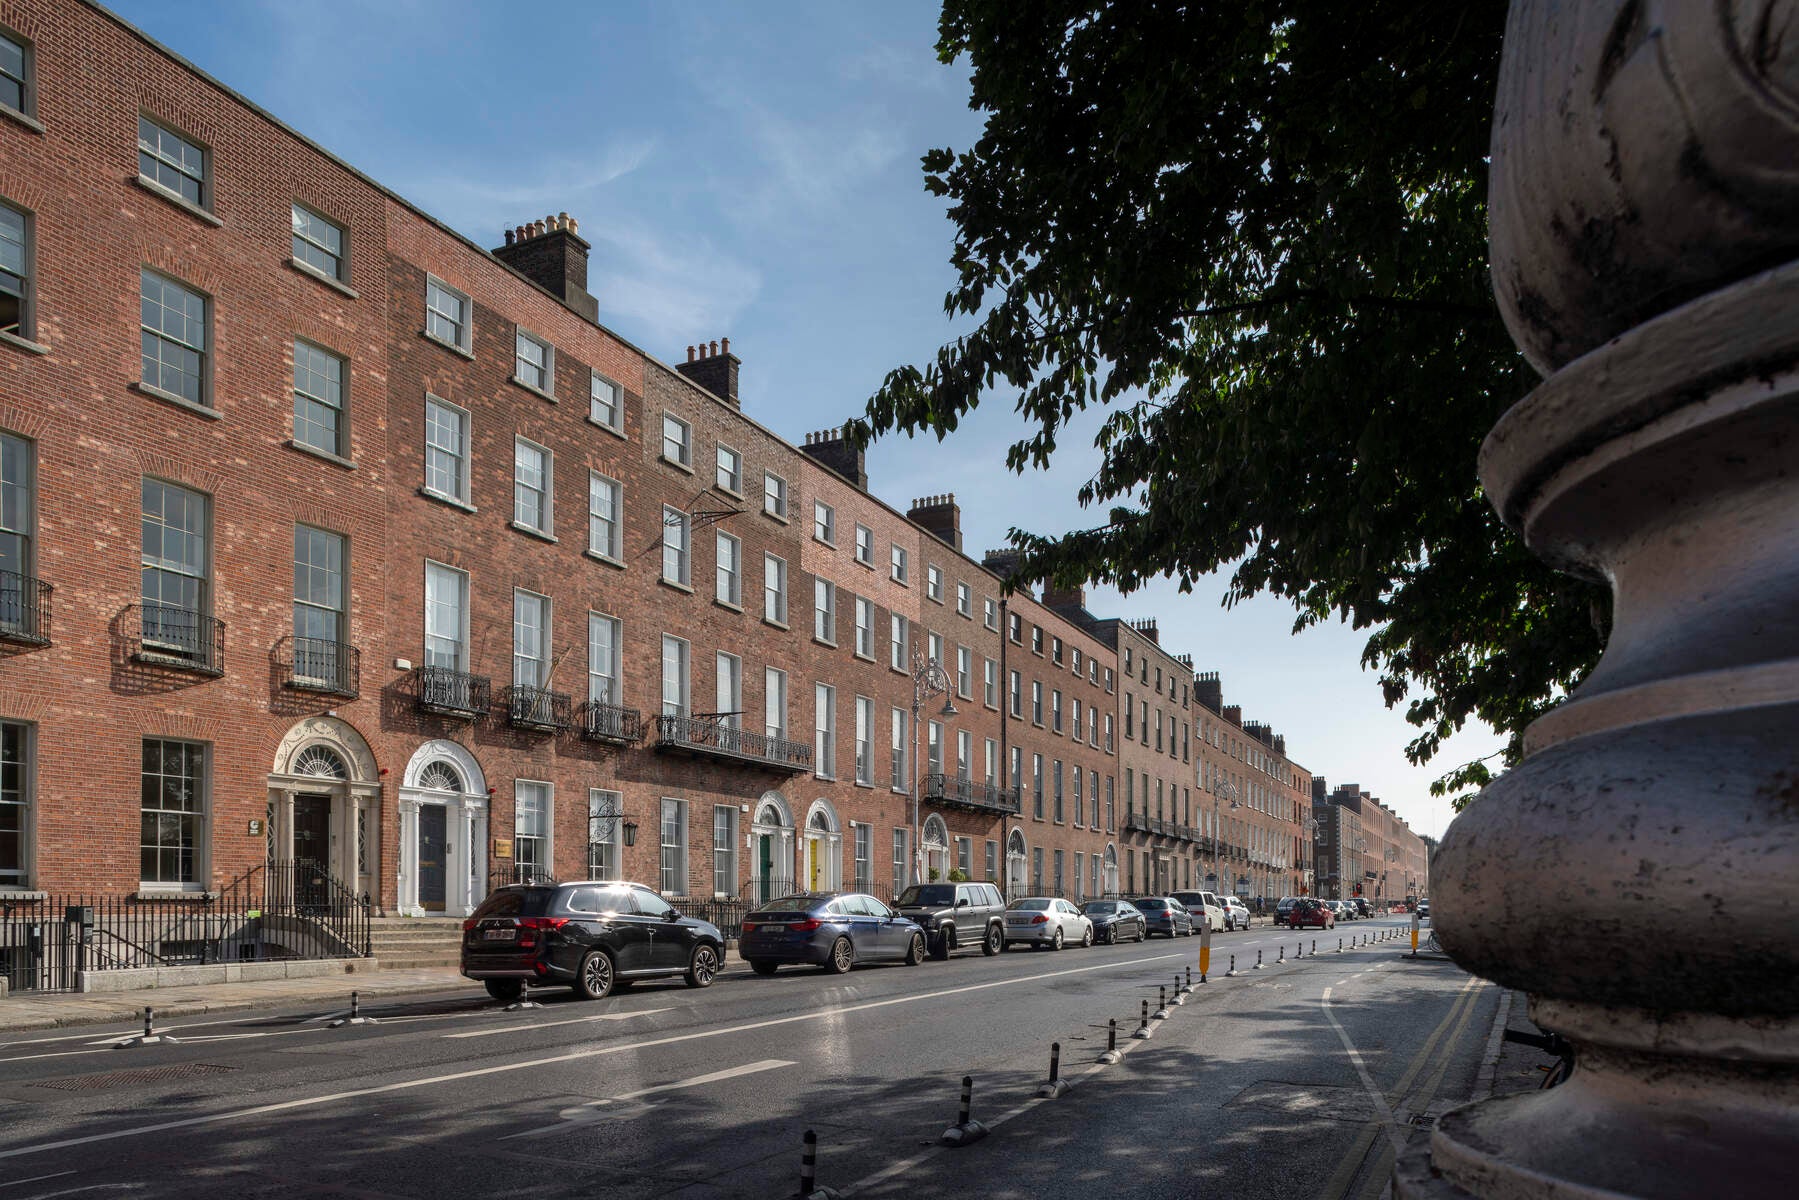 Streetscene of the Georgian buildings on Merrion Square, Dublin.